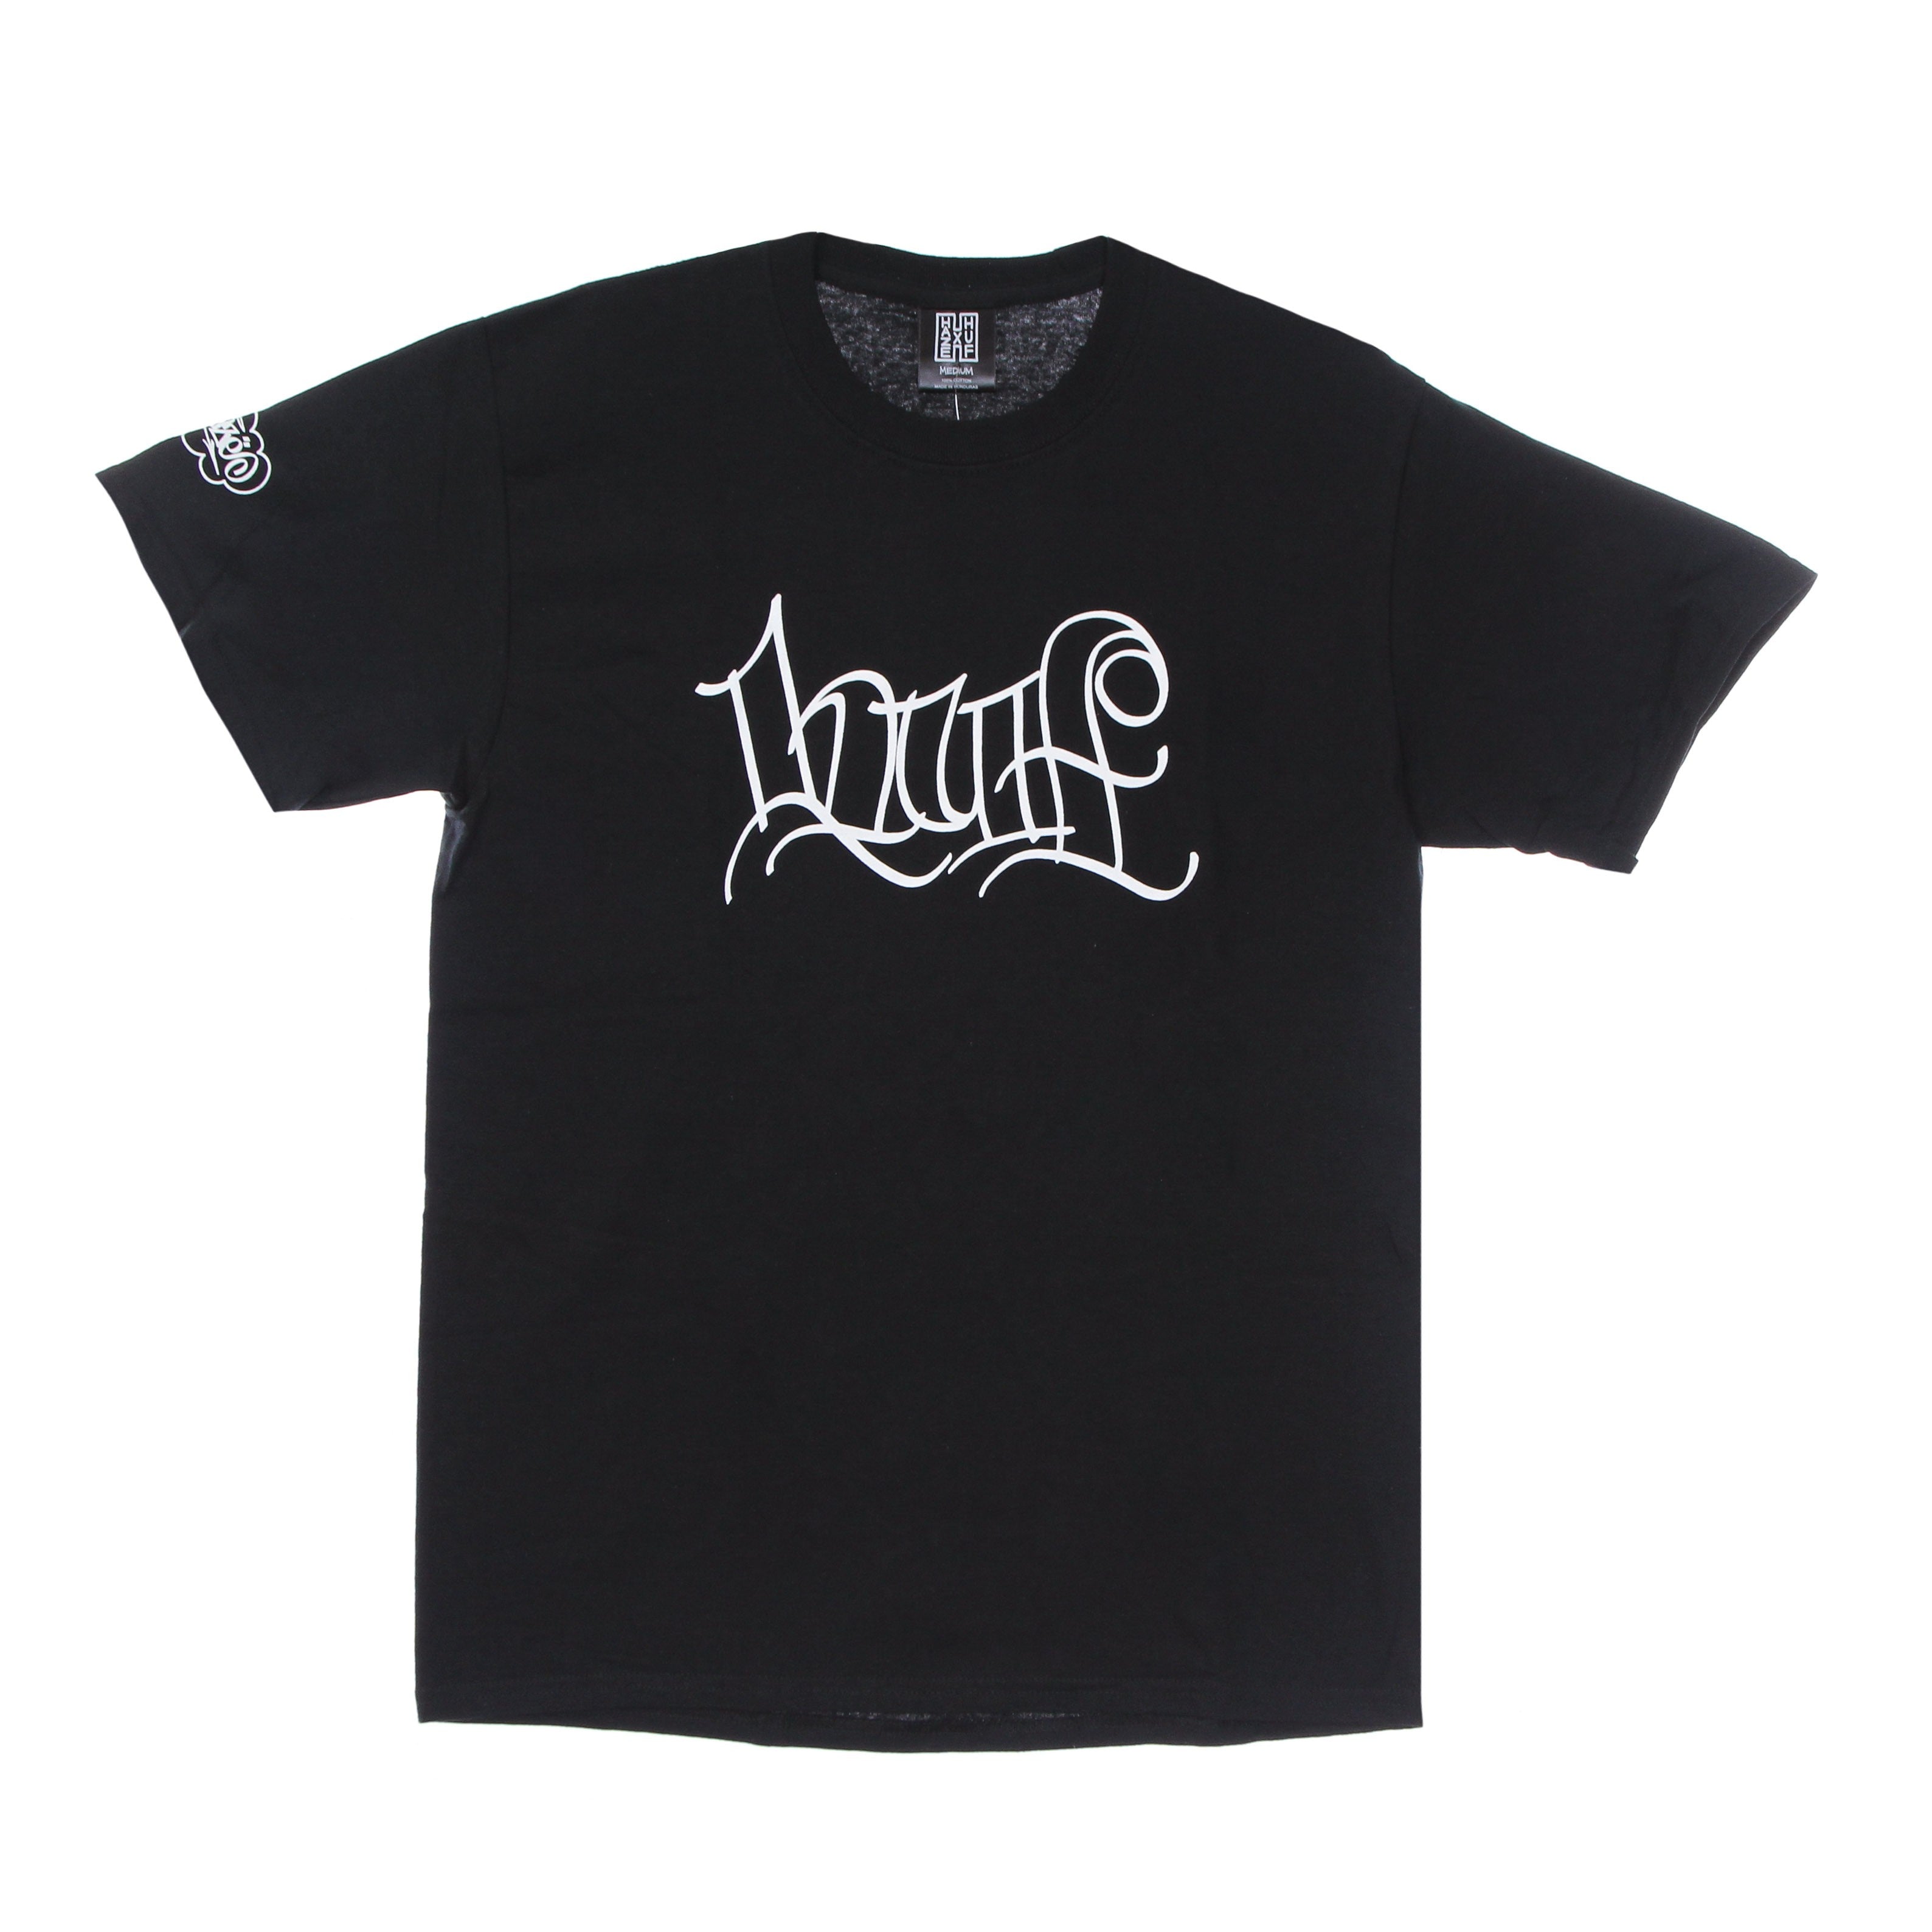 Haze Handstyle 2 Tee X Eric Haze Black Men's T-Shirt